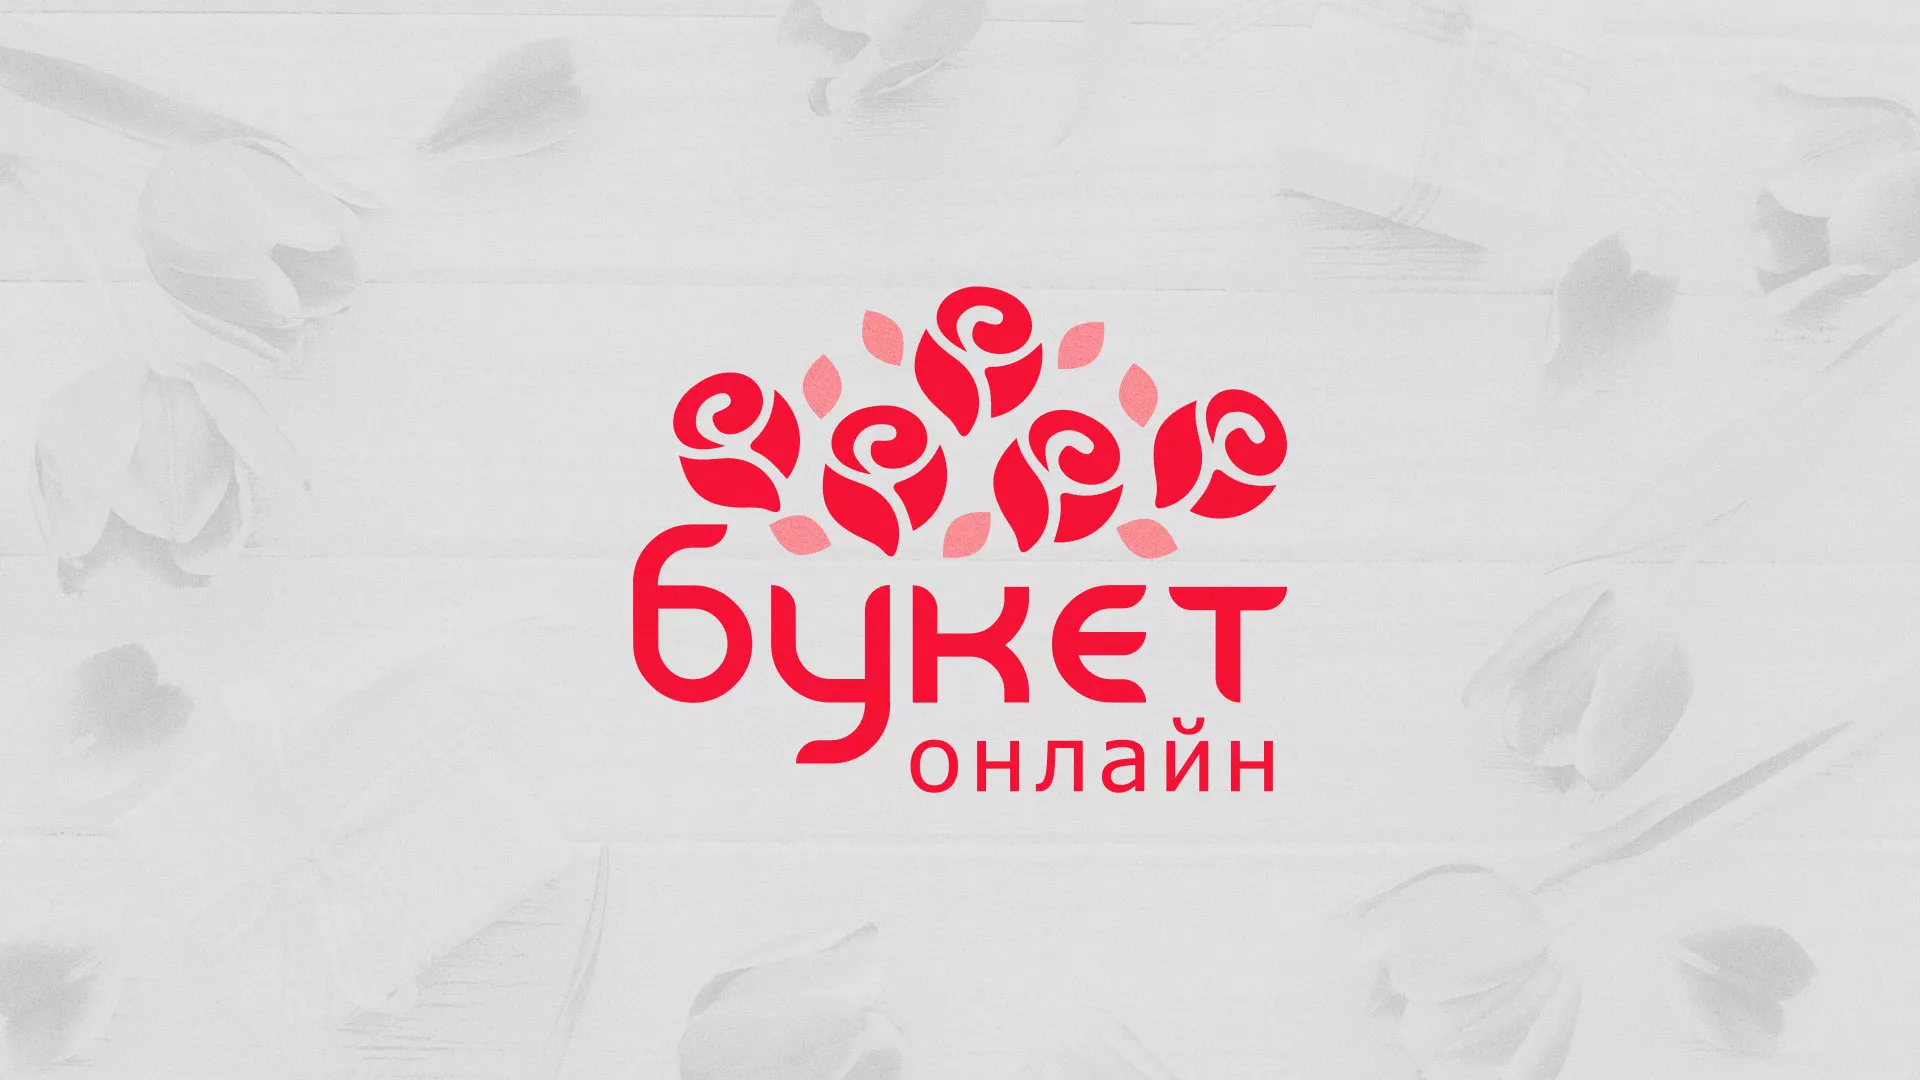 Создание интернет-магазина «Букет-онлайн» по цветам в Приморске